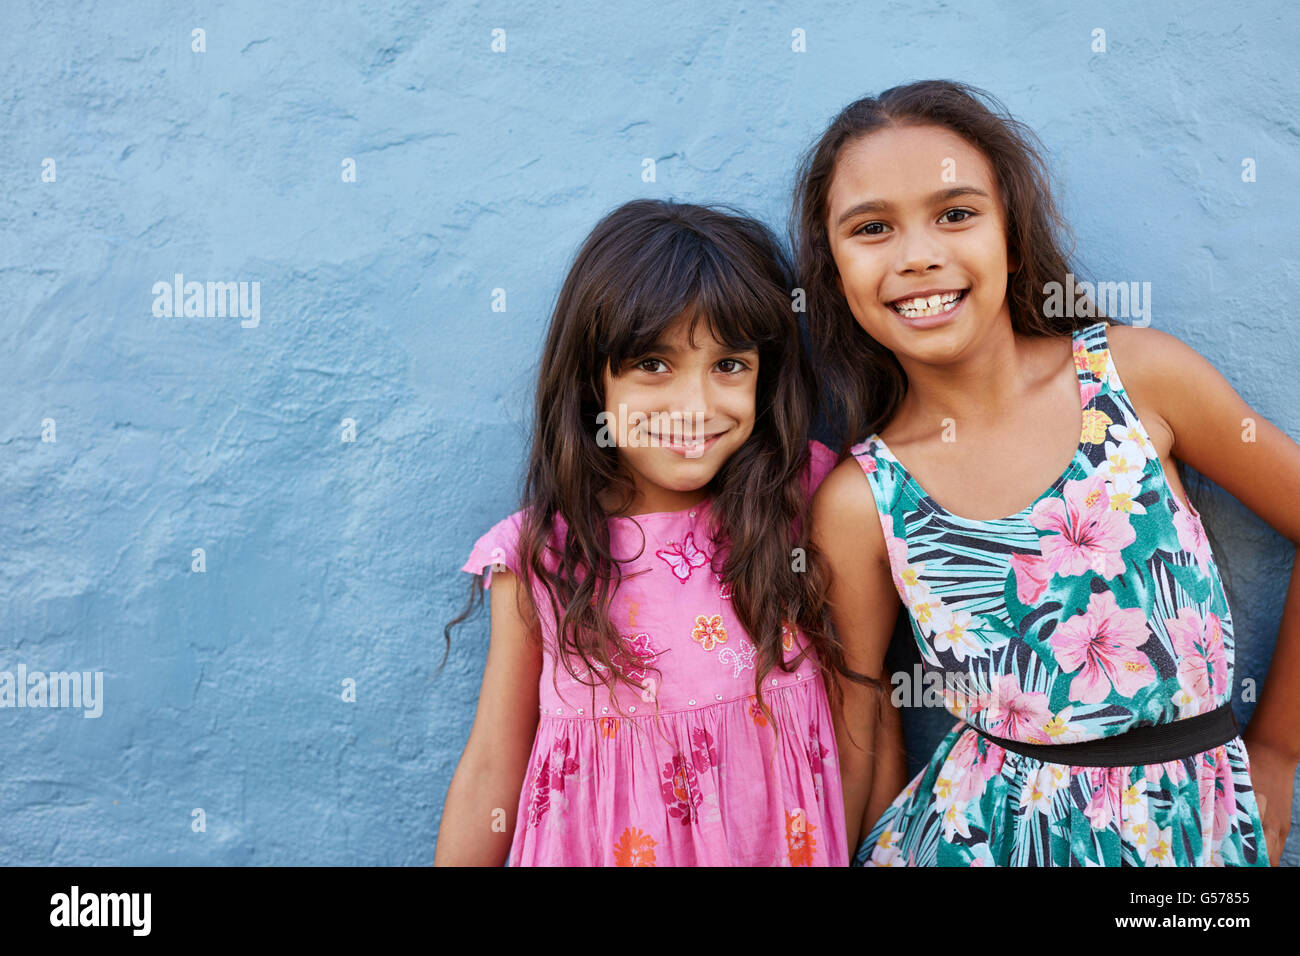 Porträt von zwei kleinen Mädchen vor blauem Hintergrund zusammenstehen. Entzückende kleine Freunde posieren zusammen mit süßen Lächeln. Stockfoto